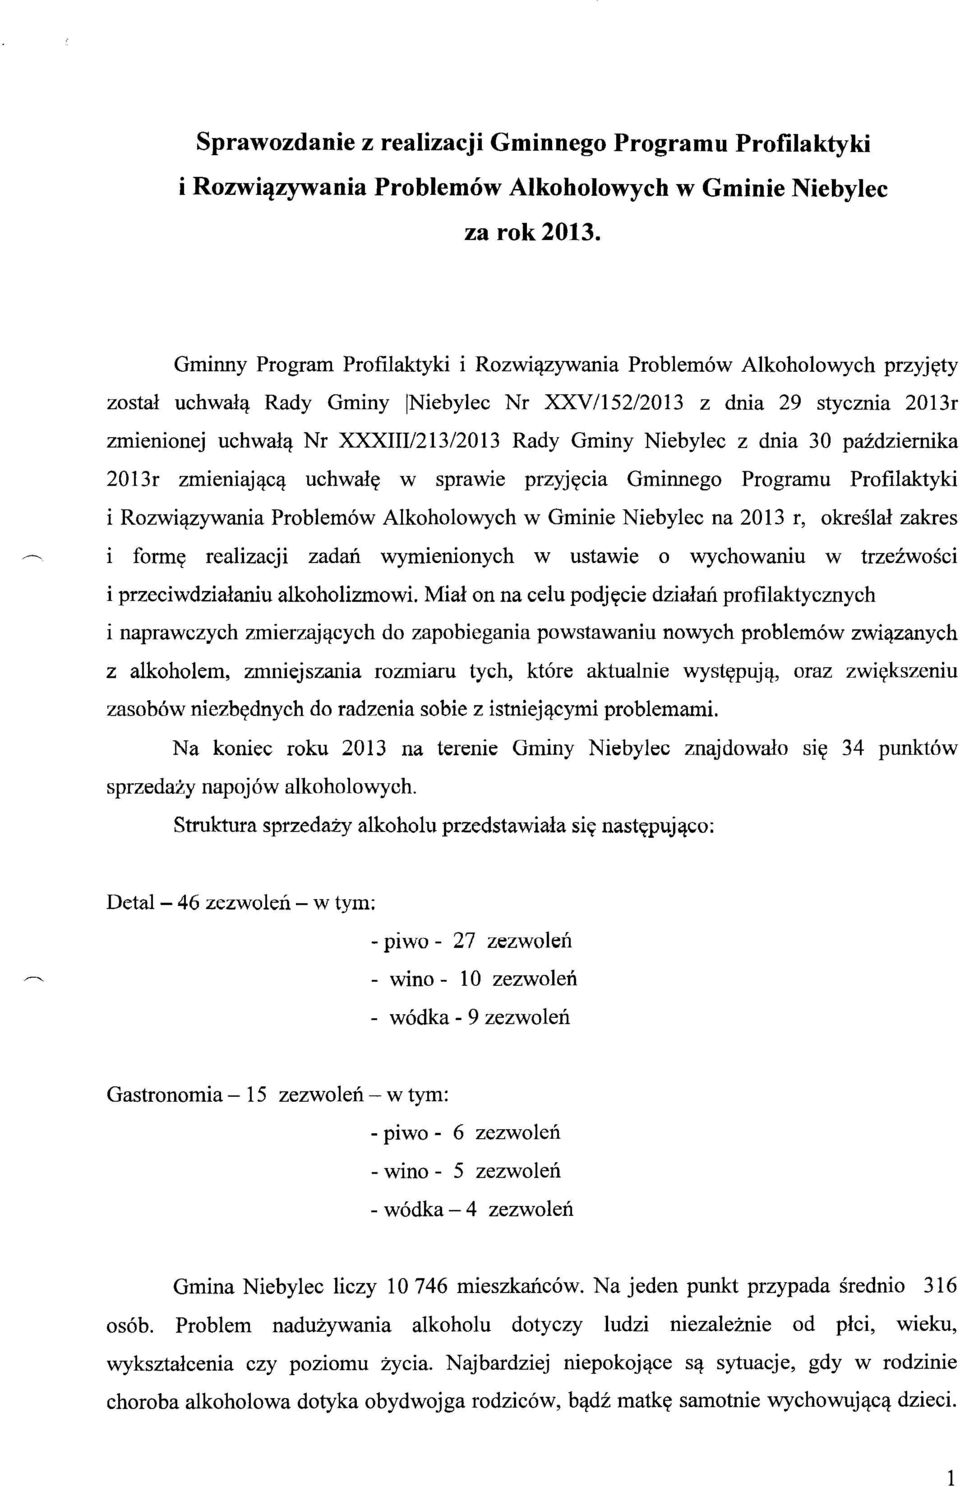 Gminy Niebylec z dnia 30 października 2013r zmieniającą uchwałę w sprawie przyjęcia Gminnego Programu Profilaktyki i Rozwiązywania Problemów Alkoholowych w Gminie Niebylec na 2013 r, określał zakres